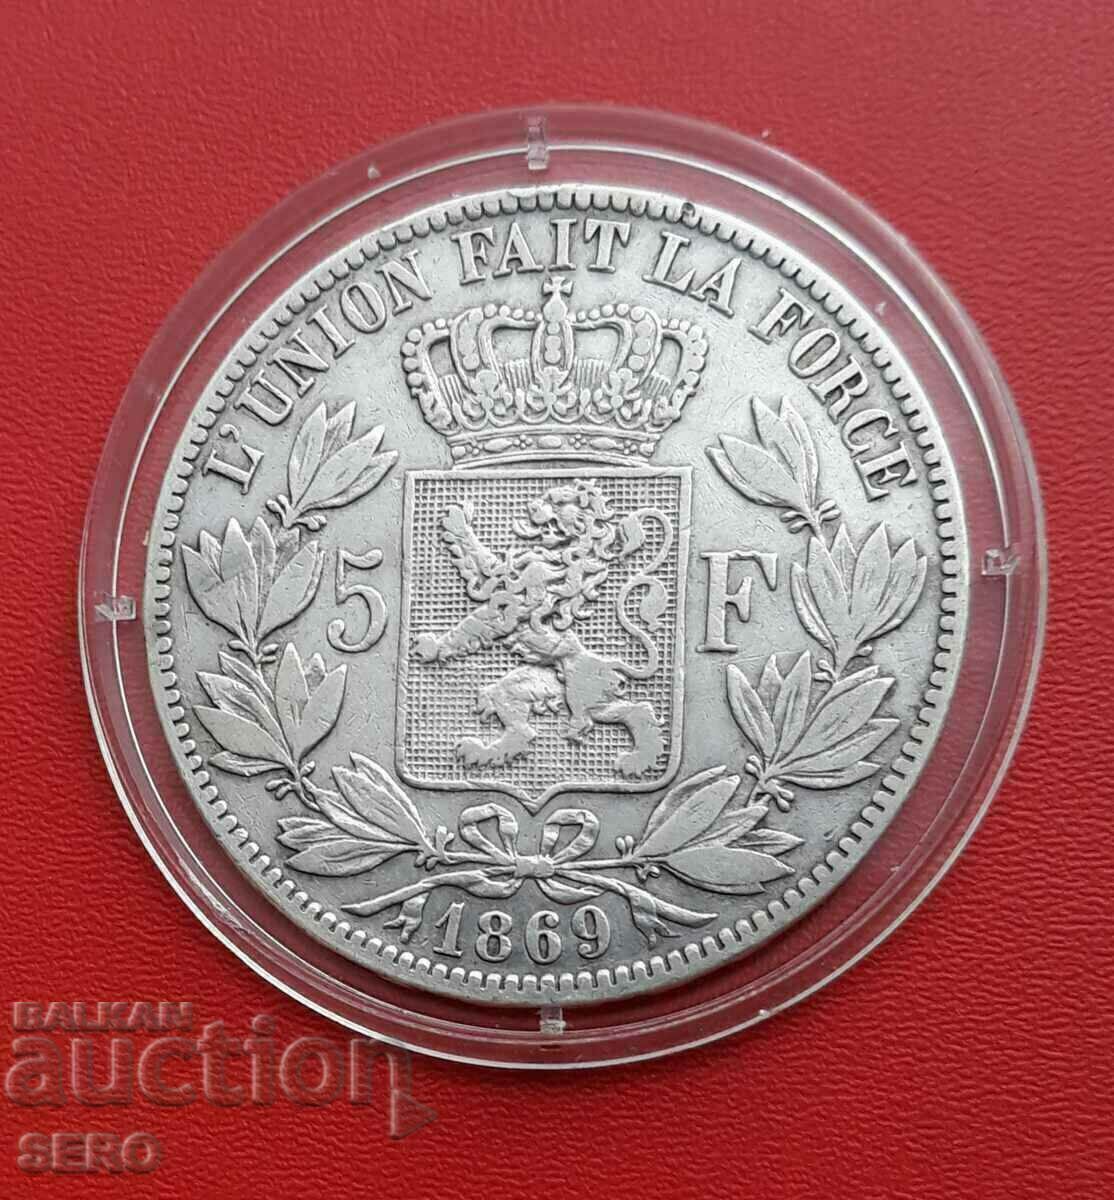 Belgium-5 francs 1869